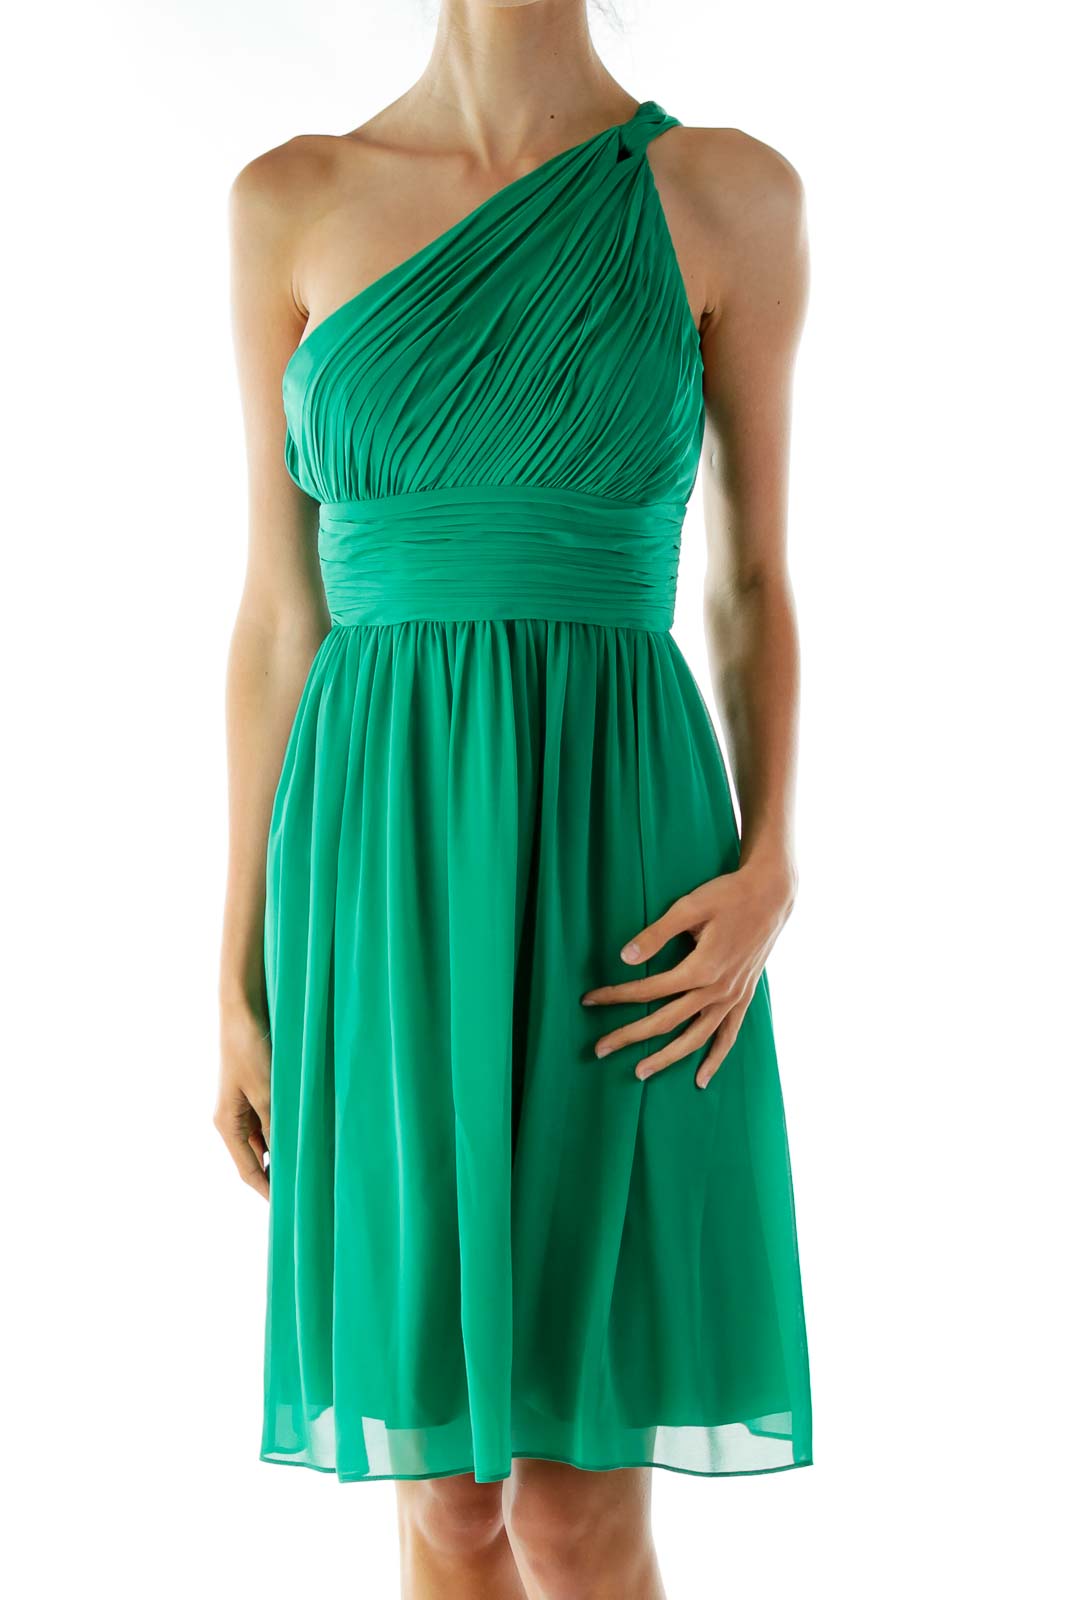 Green One-Shoulder Cocktail Dress Front